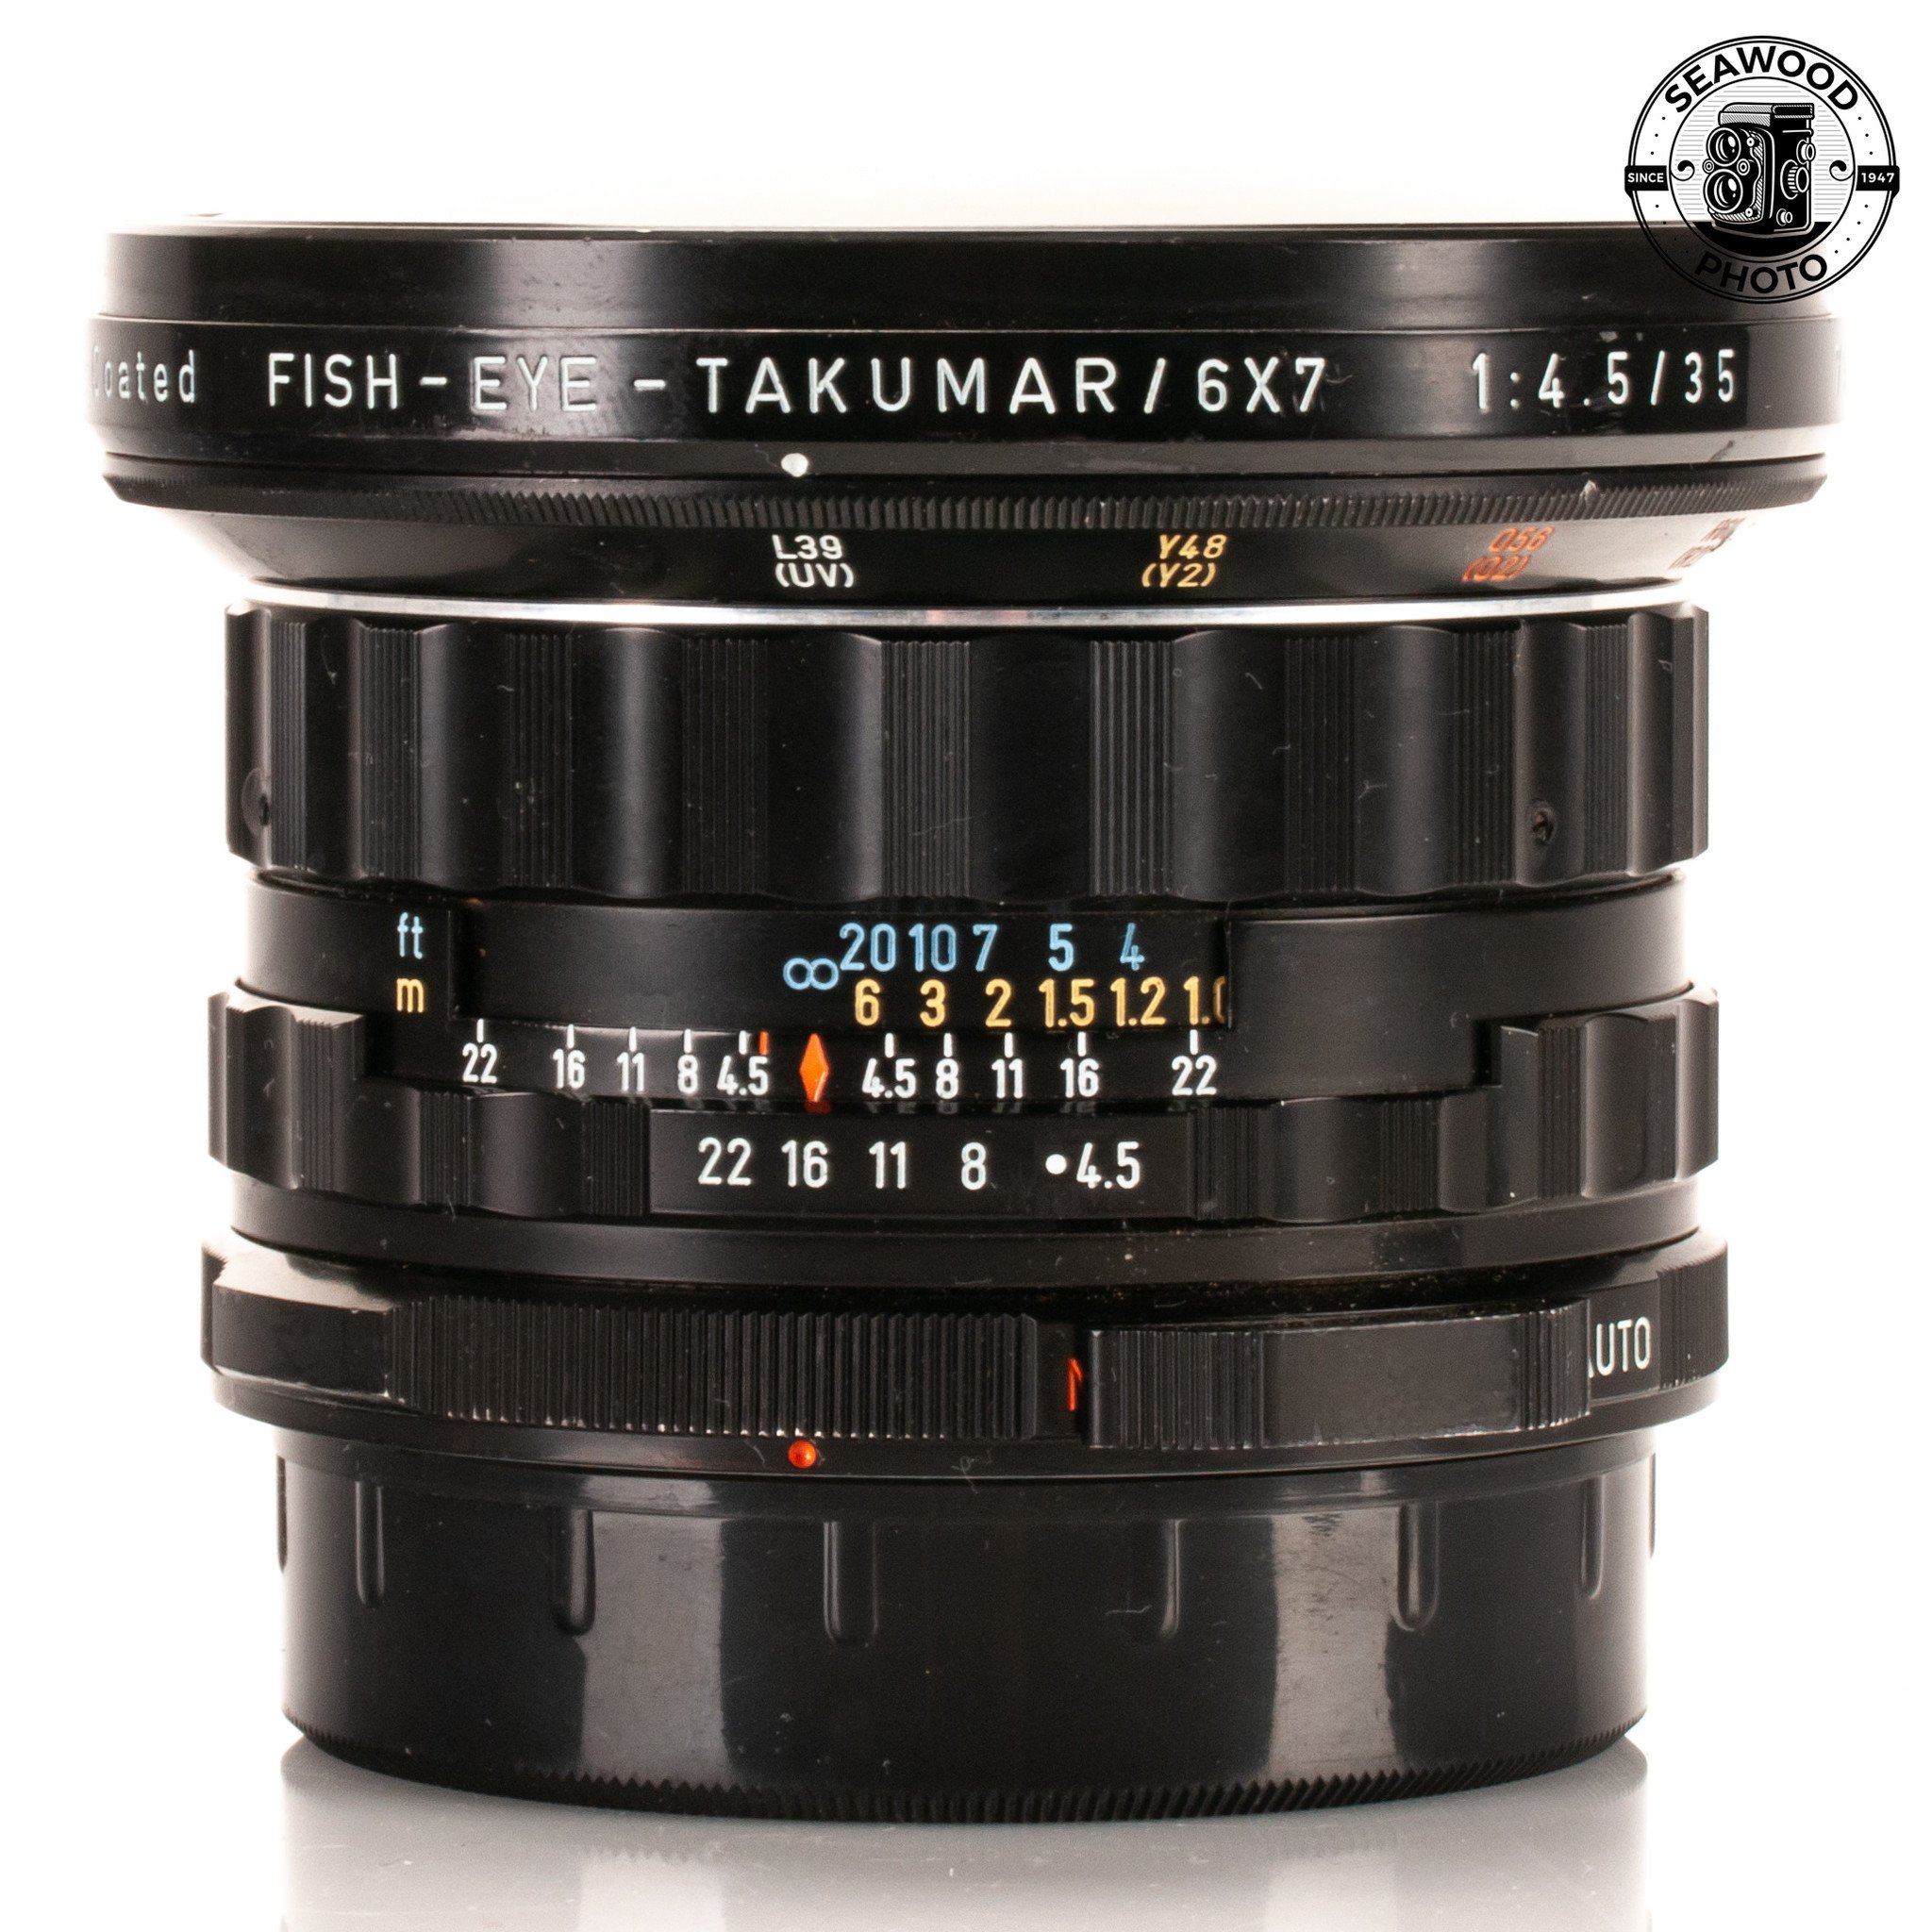 PENTAX FISH-EYE-TAKUMAR 6x7 35mm F4.5 | www.pituca.com.br